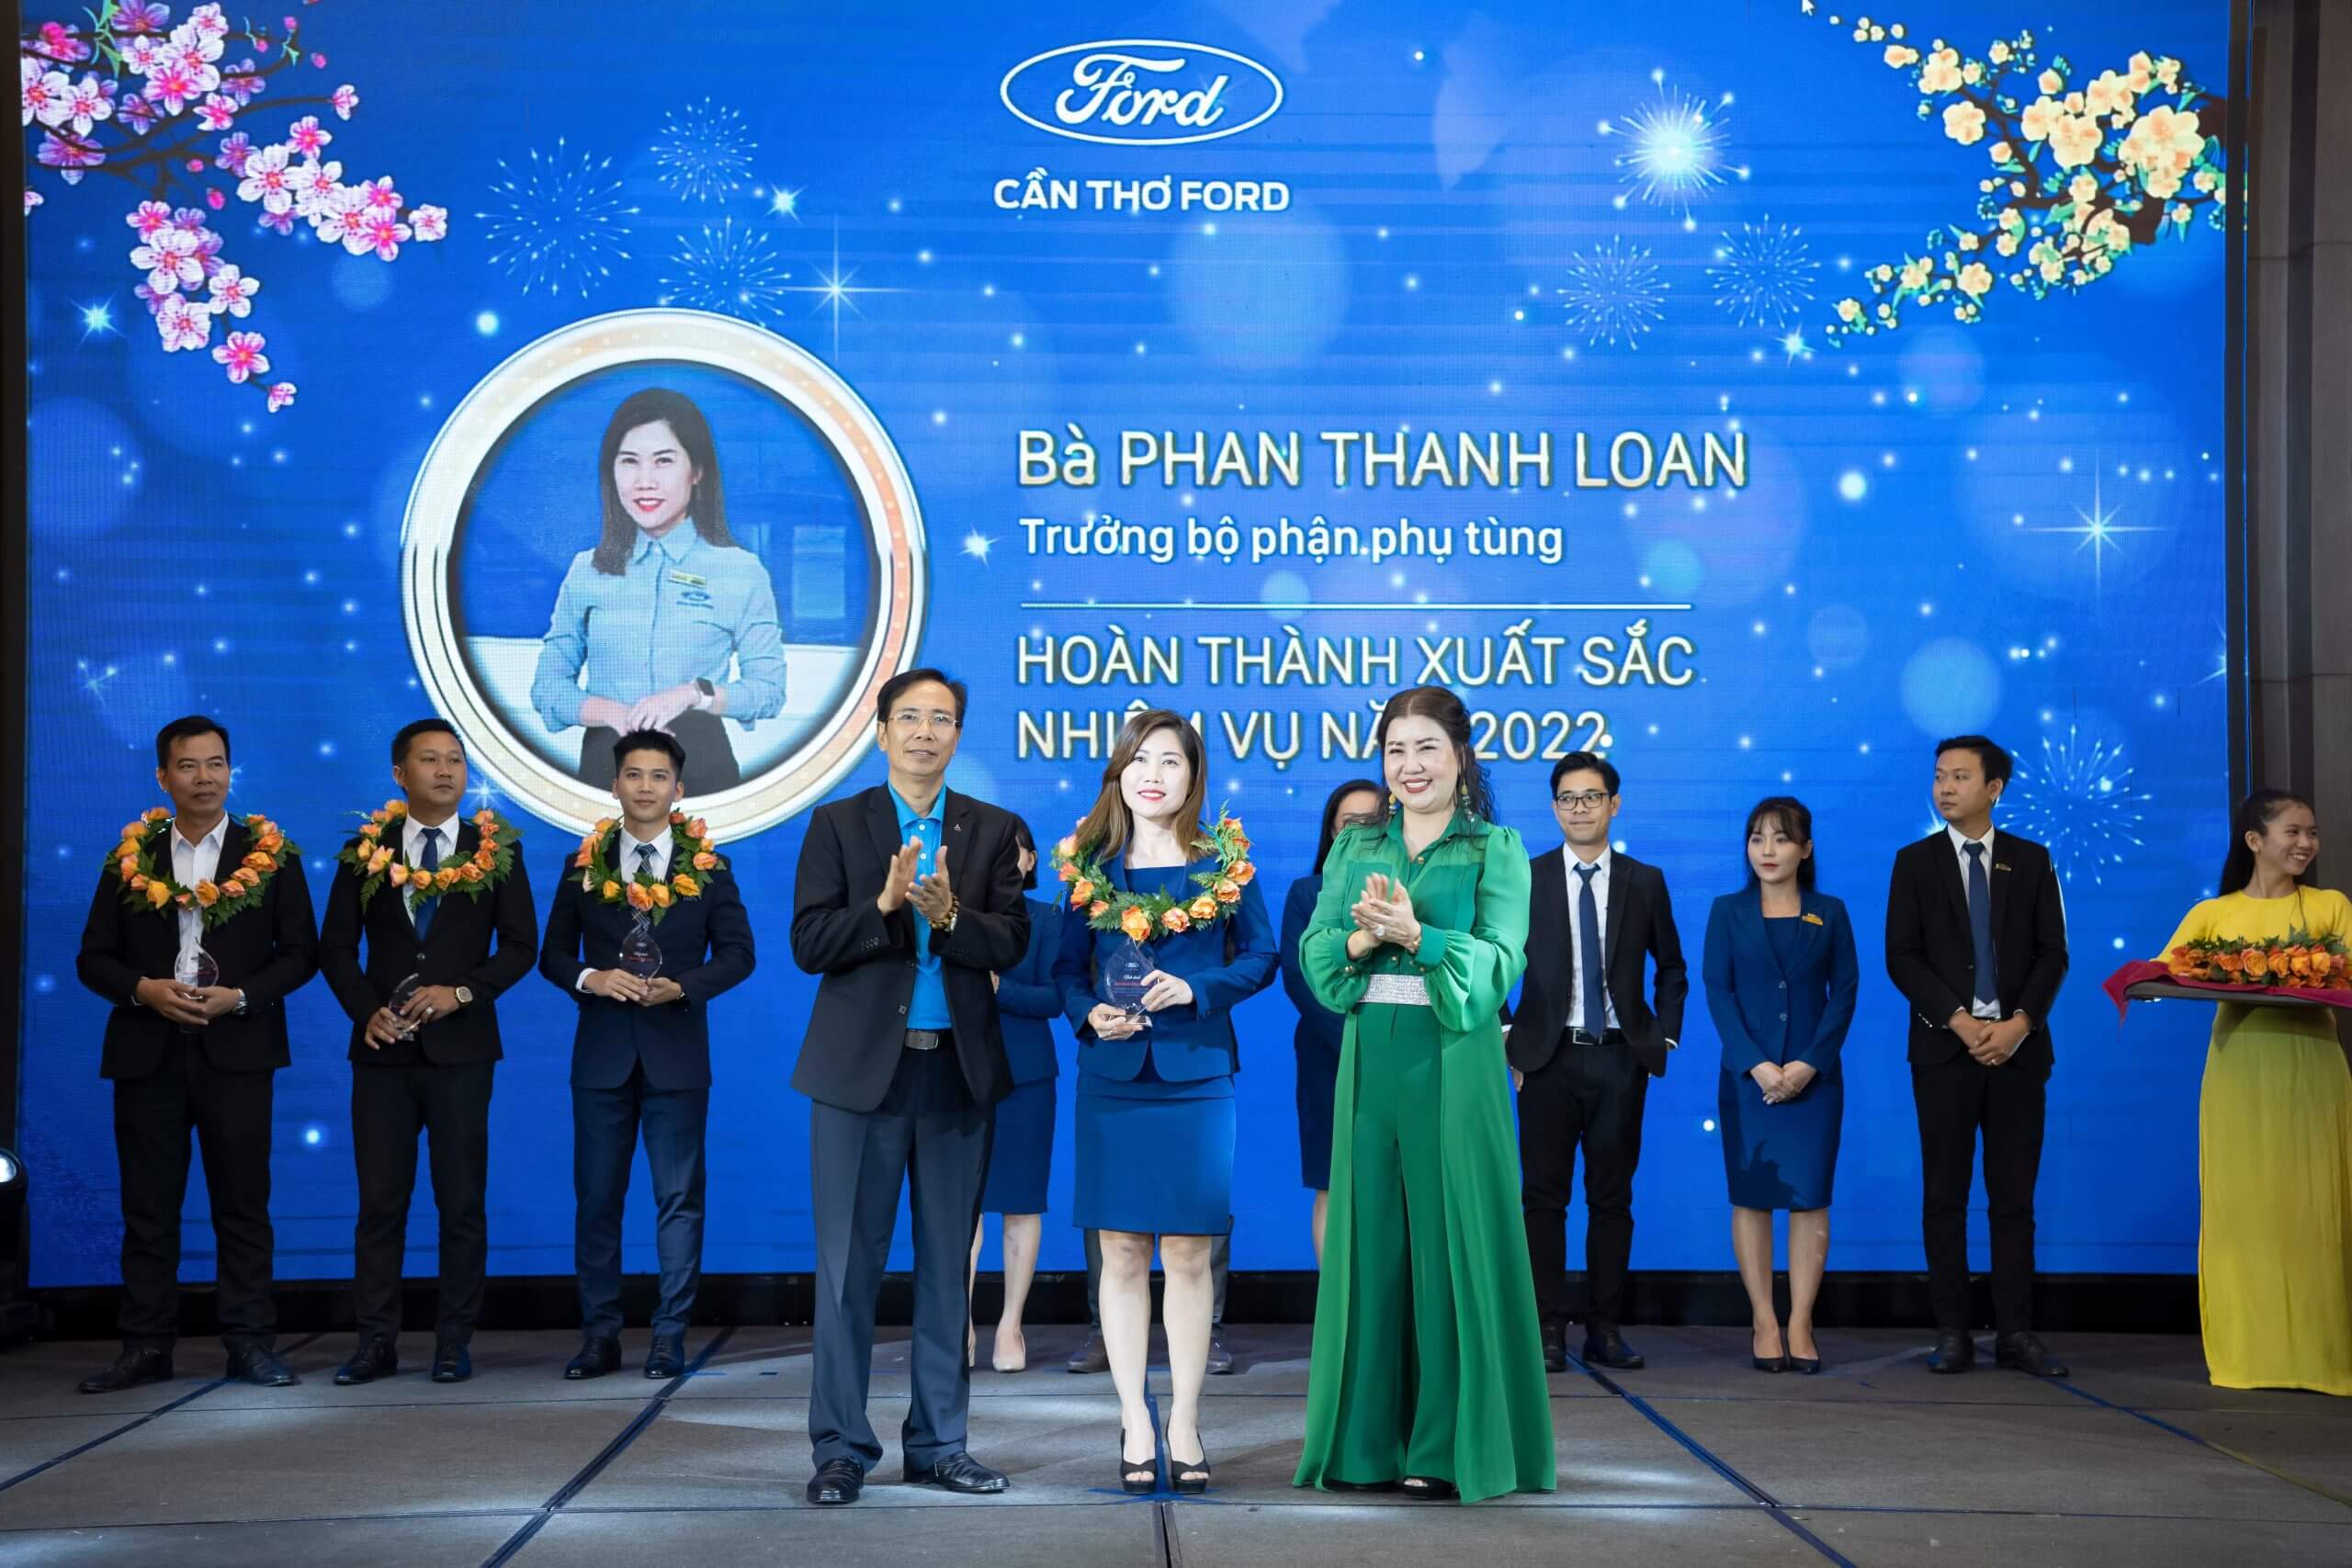 Cá nhân HTXSNV 2022 - Phan Thanh Loan - 1